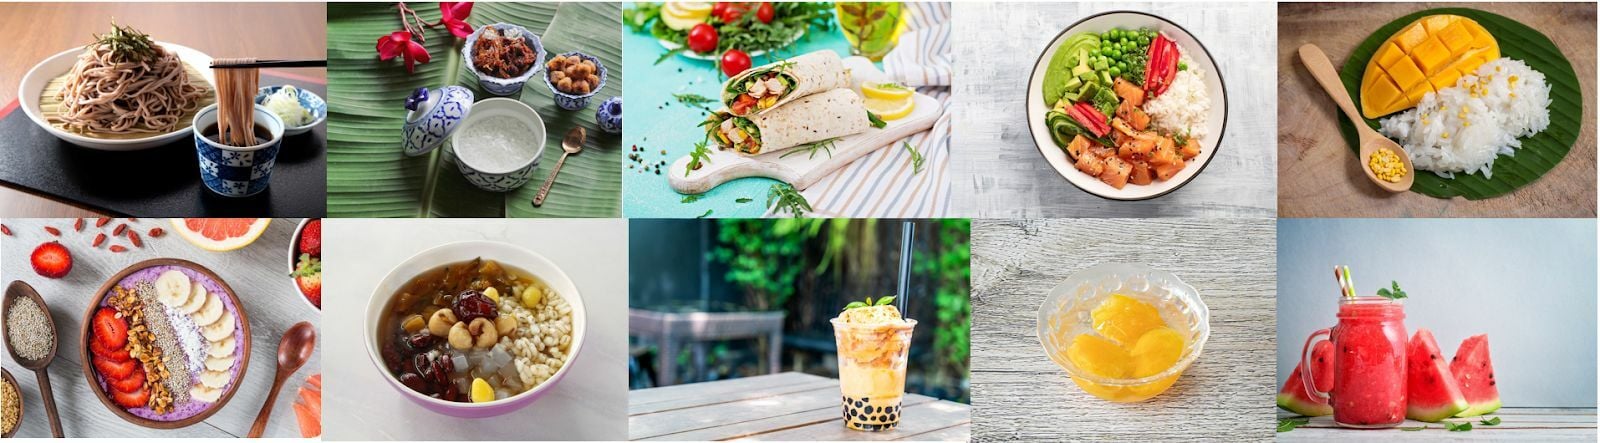 Images of foodpanda's menus